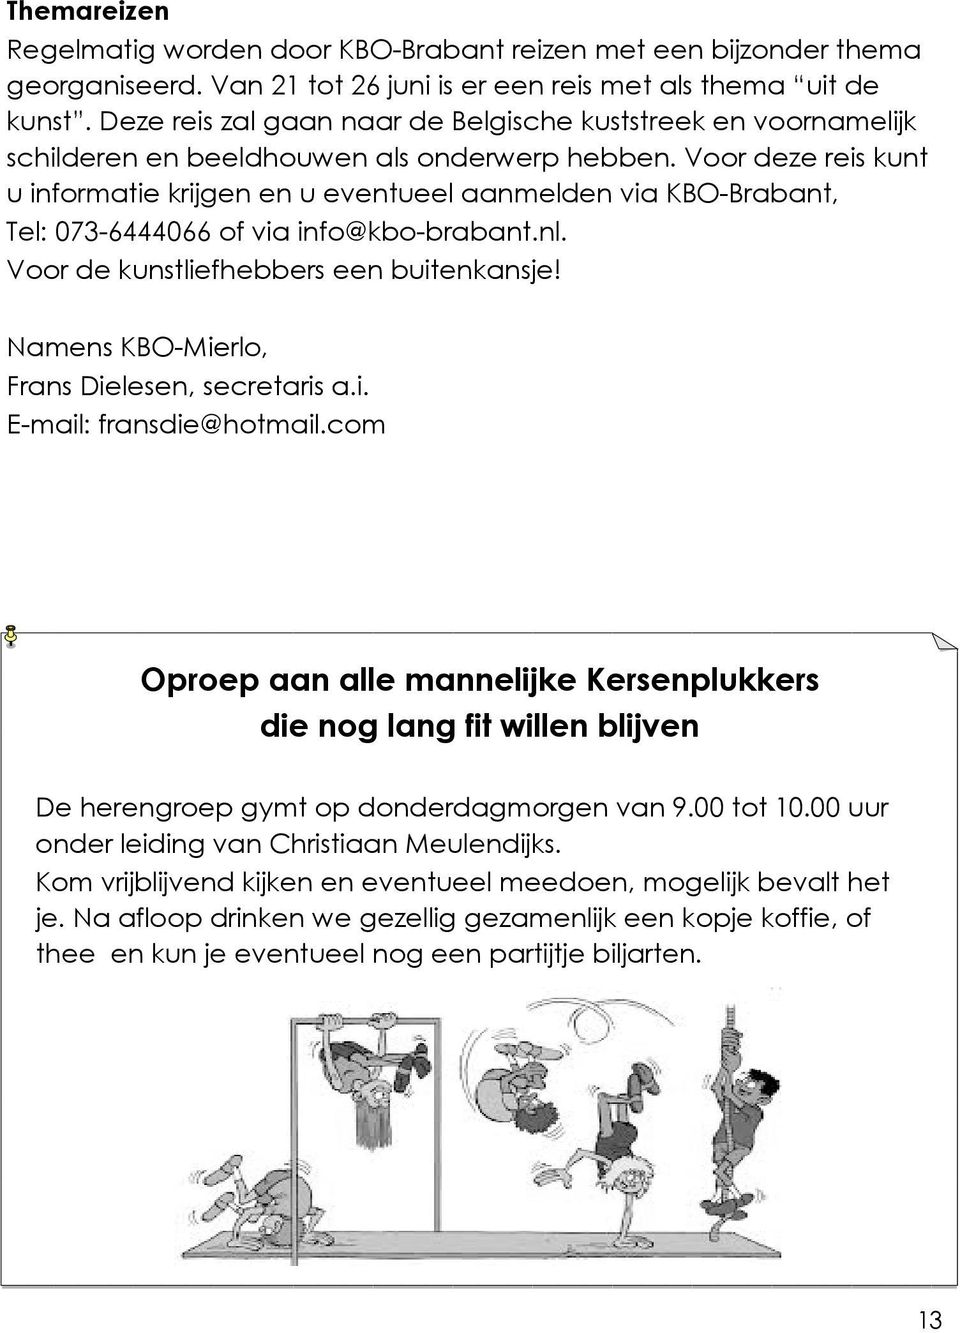 Voor deze reis kunt u informatie krijgen en u eventueel aanmelden via KBO-Brabant, Tel: 073-6444066 of via info@kbo-brabant.nl. Voor de kunstliefhebbers een buitenkansje!